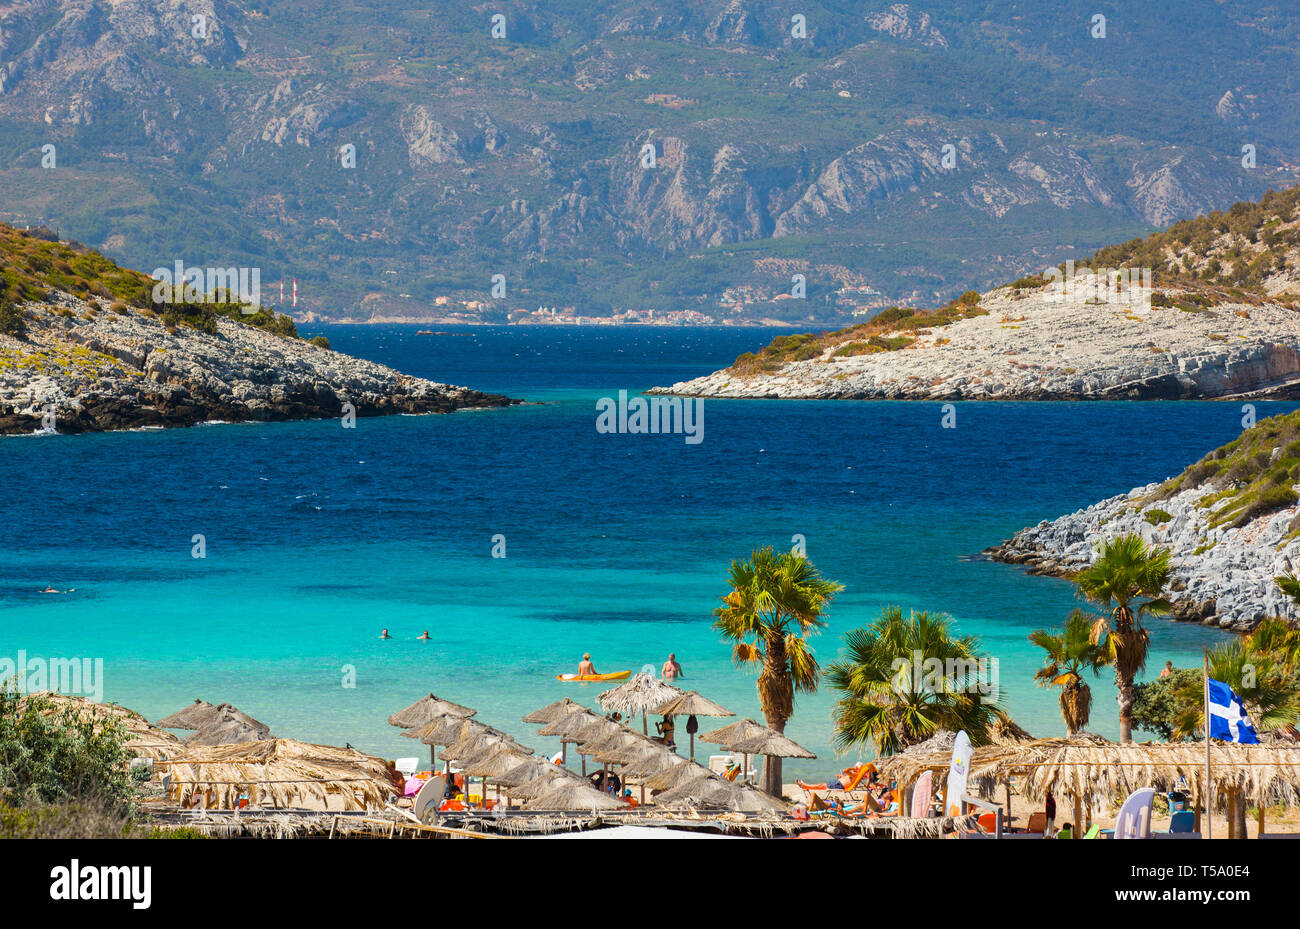 L'île de Samos, Grèce - 15 septembre 2017 : Belle Livadaki beach, les touristes bénéficiant d'une belle journée d'été sur l'île de Samos en Grèce Banque D'Images